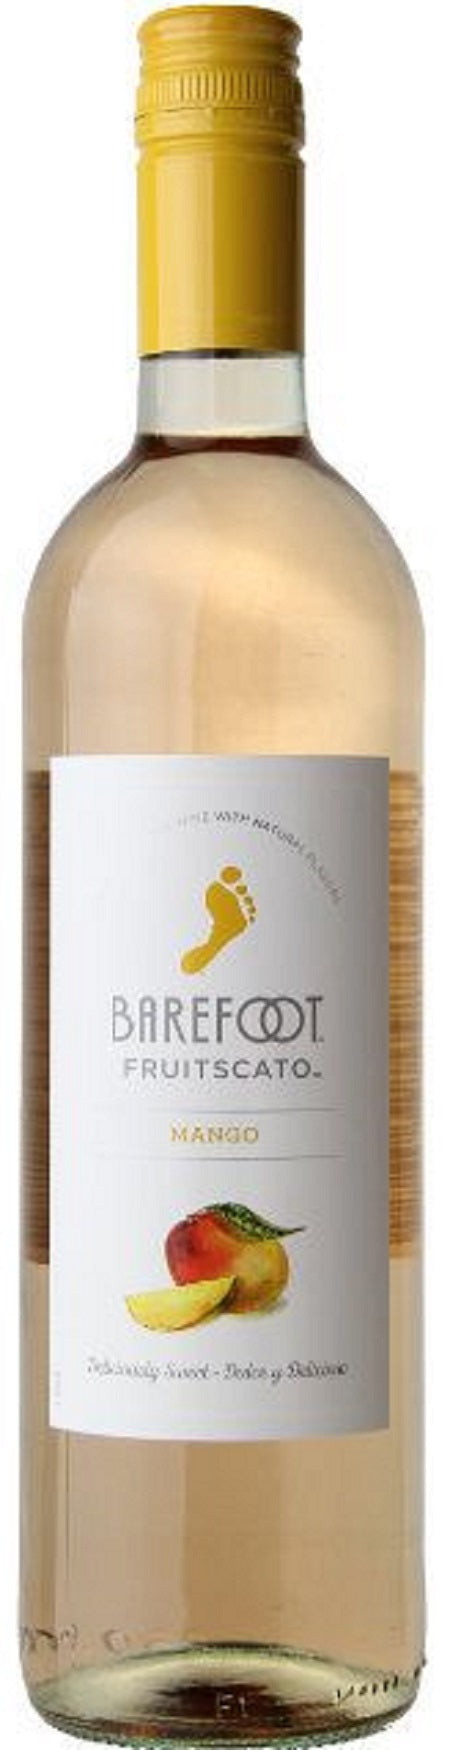 Barefoot Fruitscato Mango